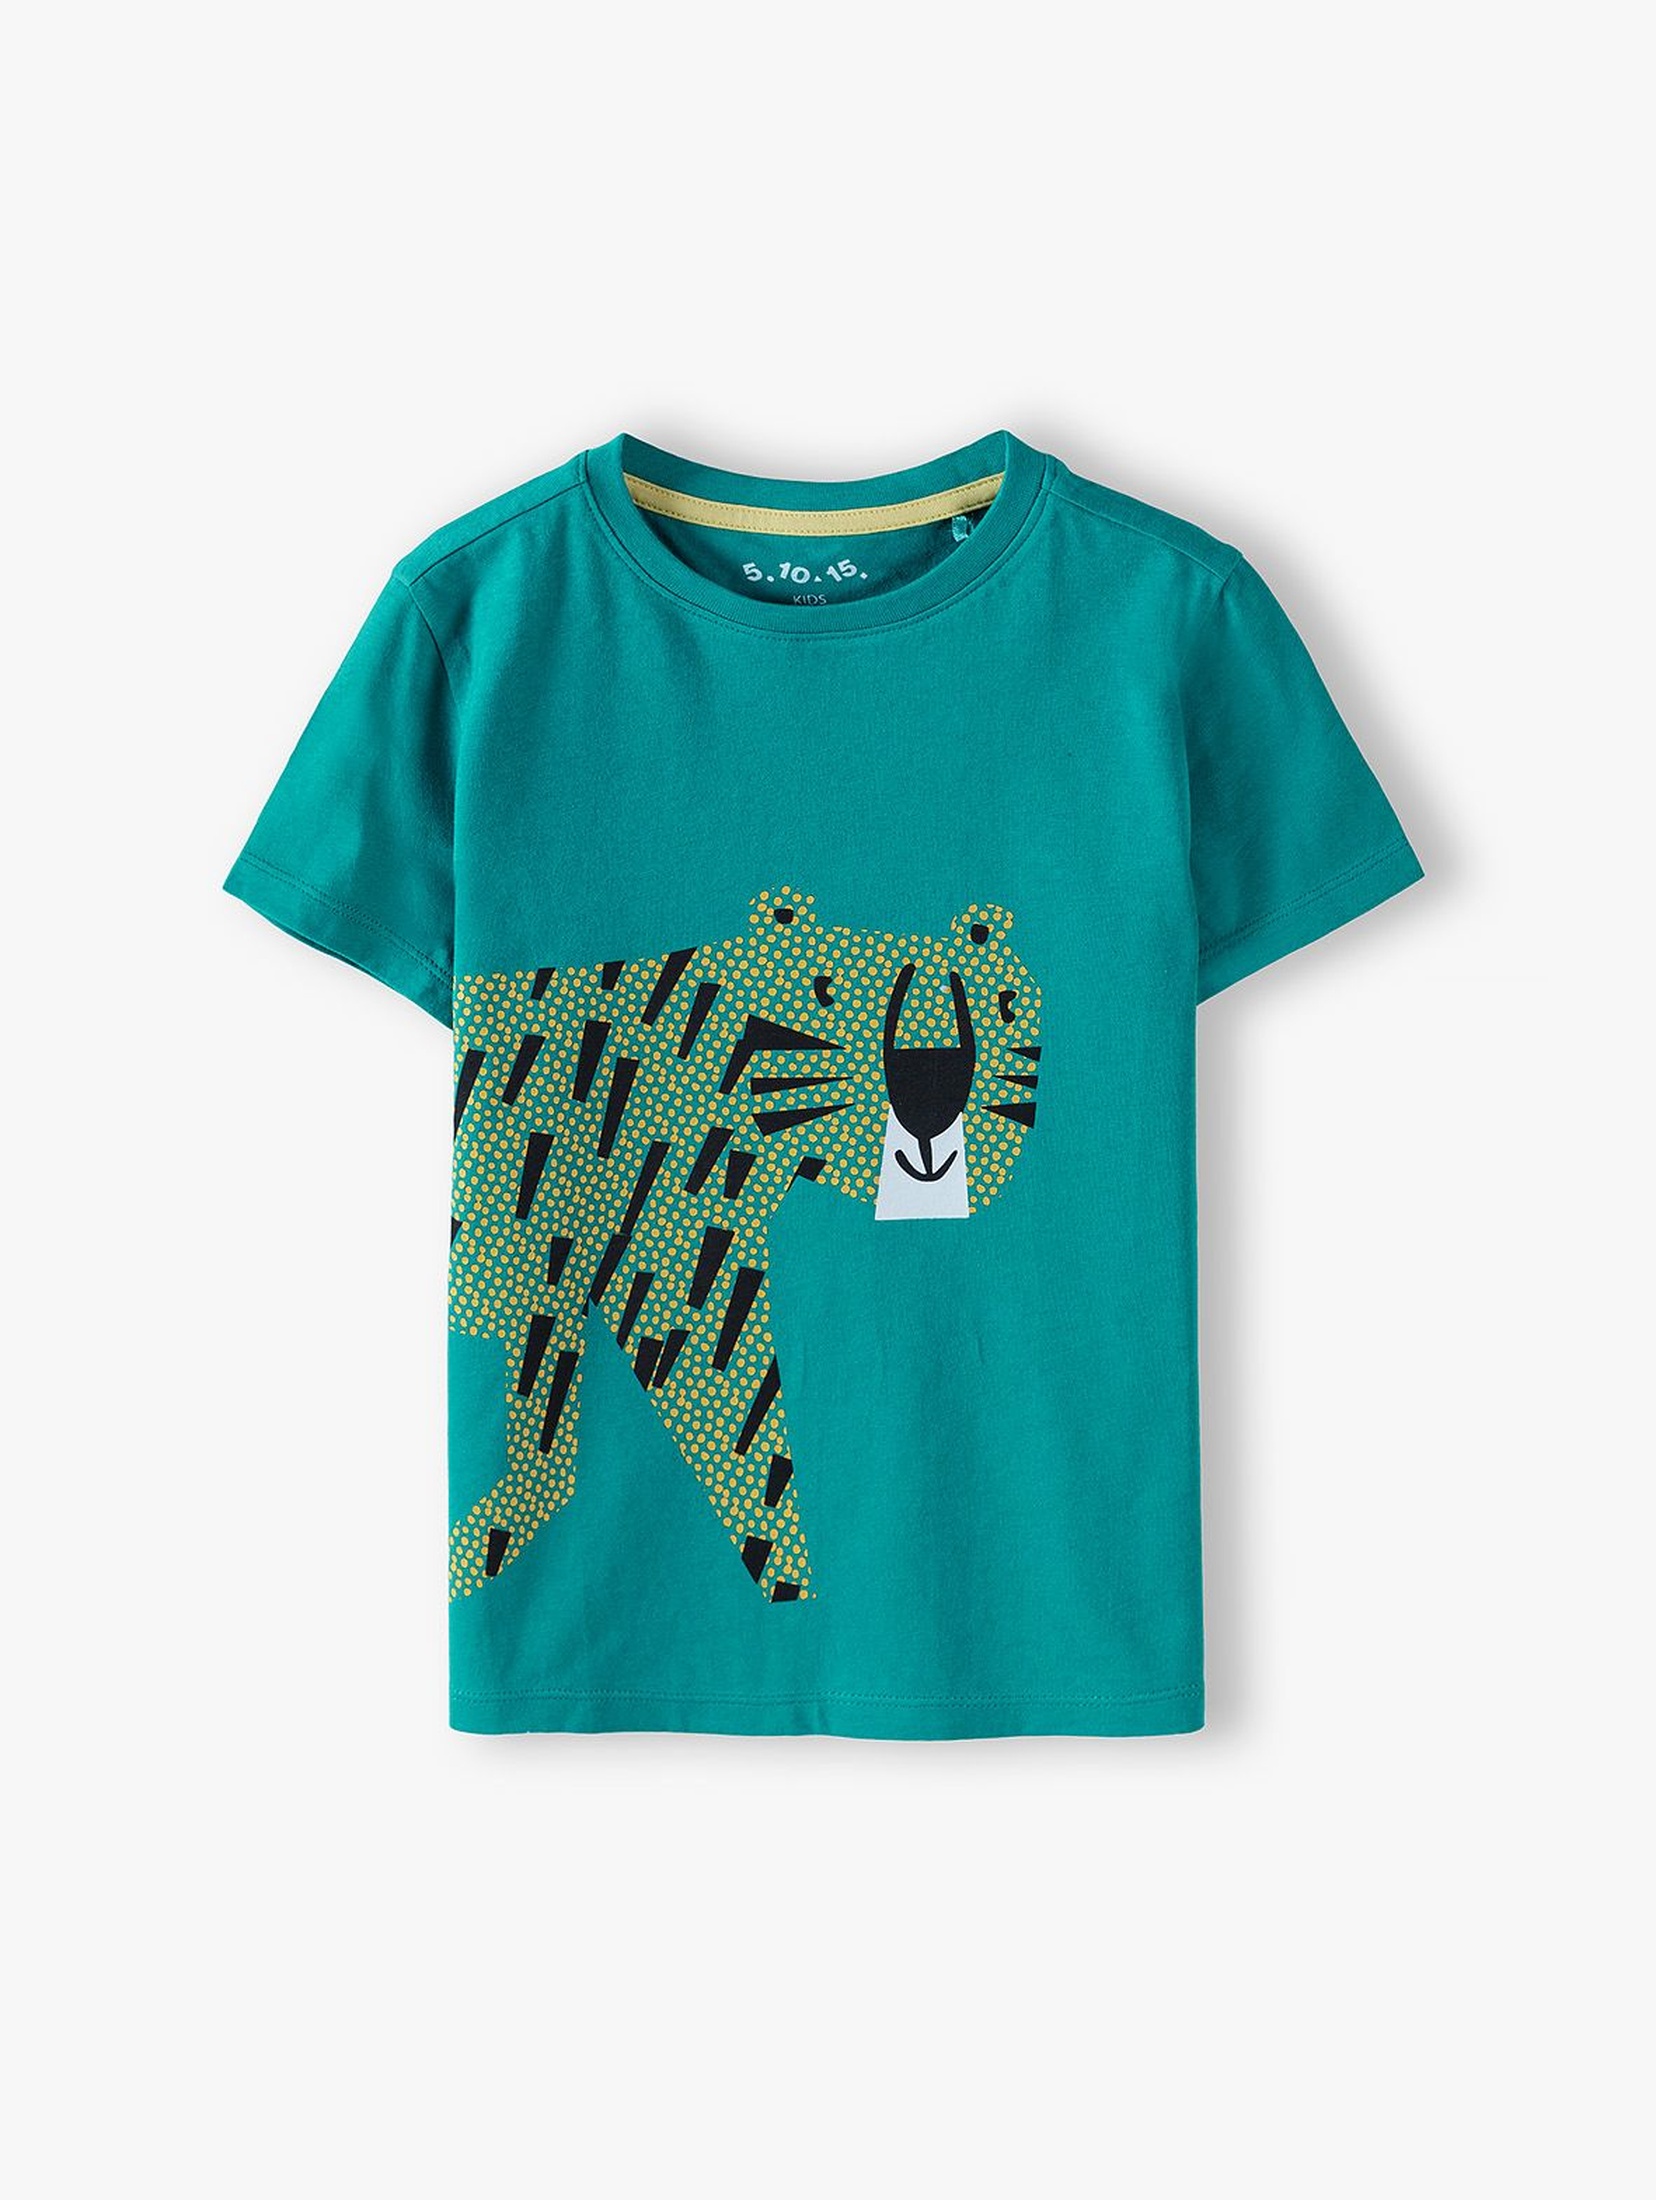 T-shirt chłopięcy w kolorze zielonym z tygryskiem